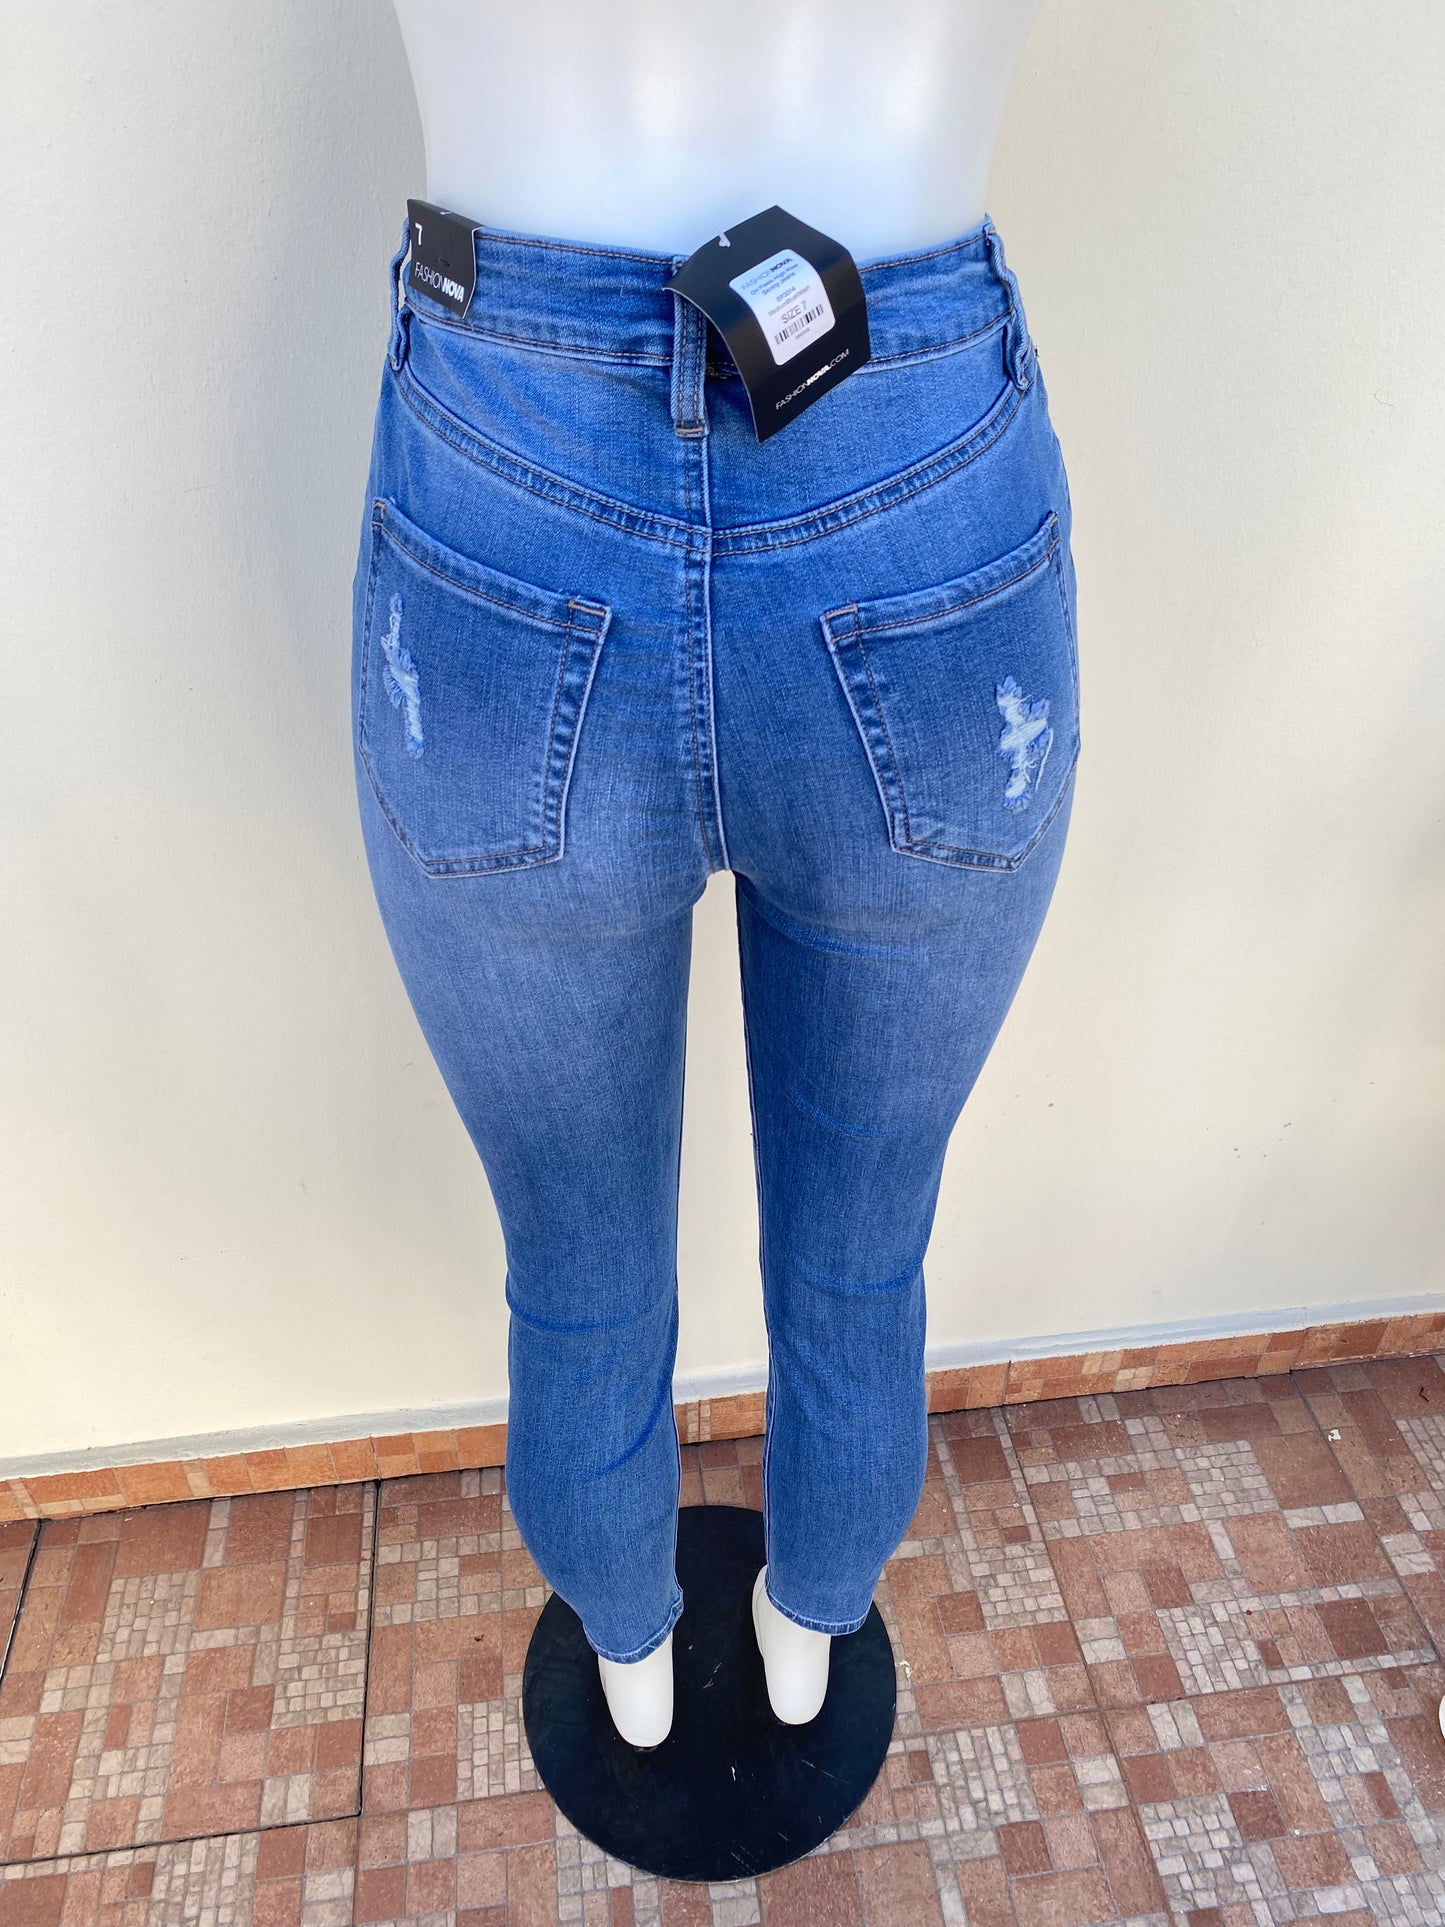 Pantalón jeans Fashion nova original color azul con varios rasgados